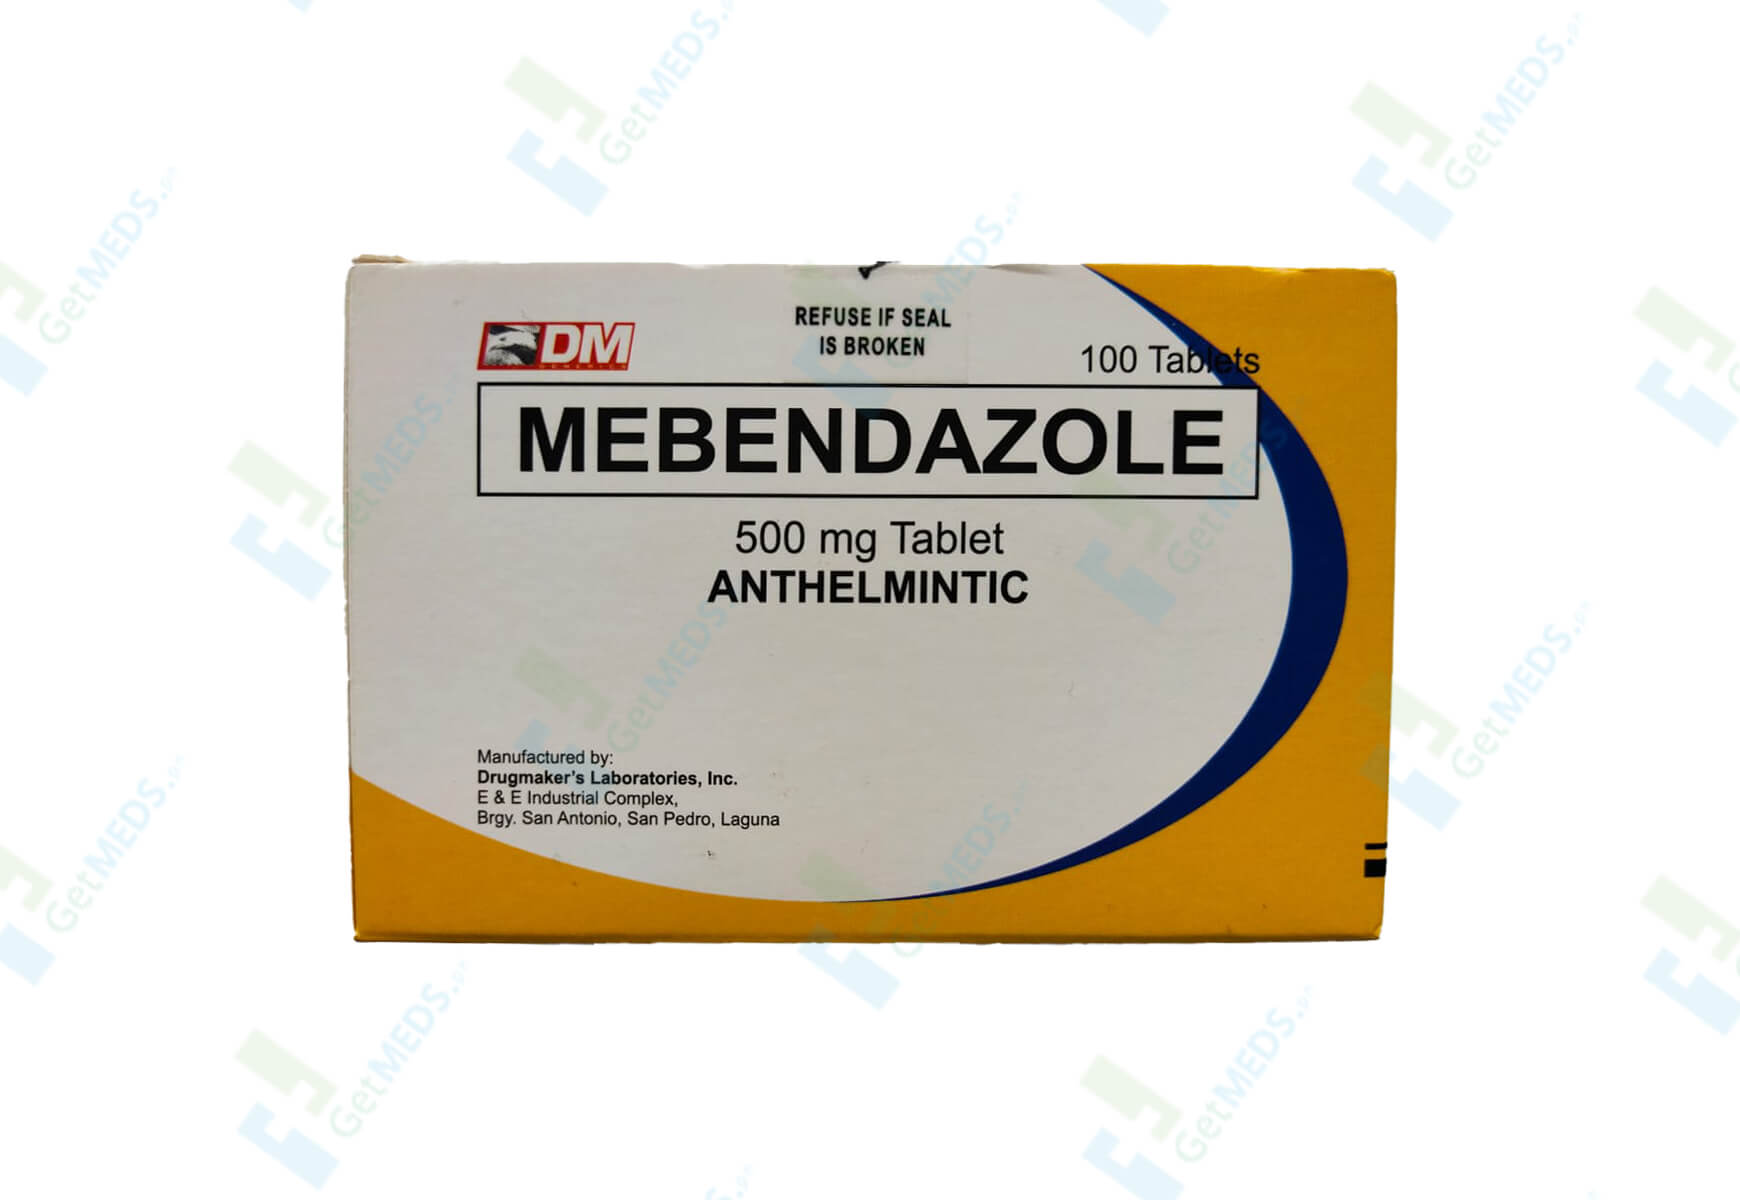 Drugmakers Mebendazole